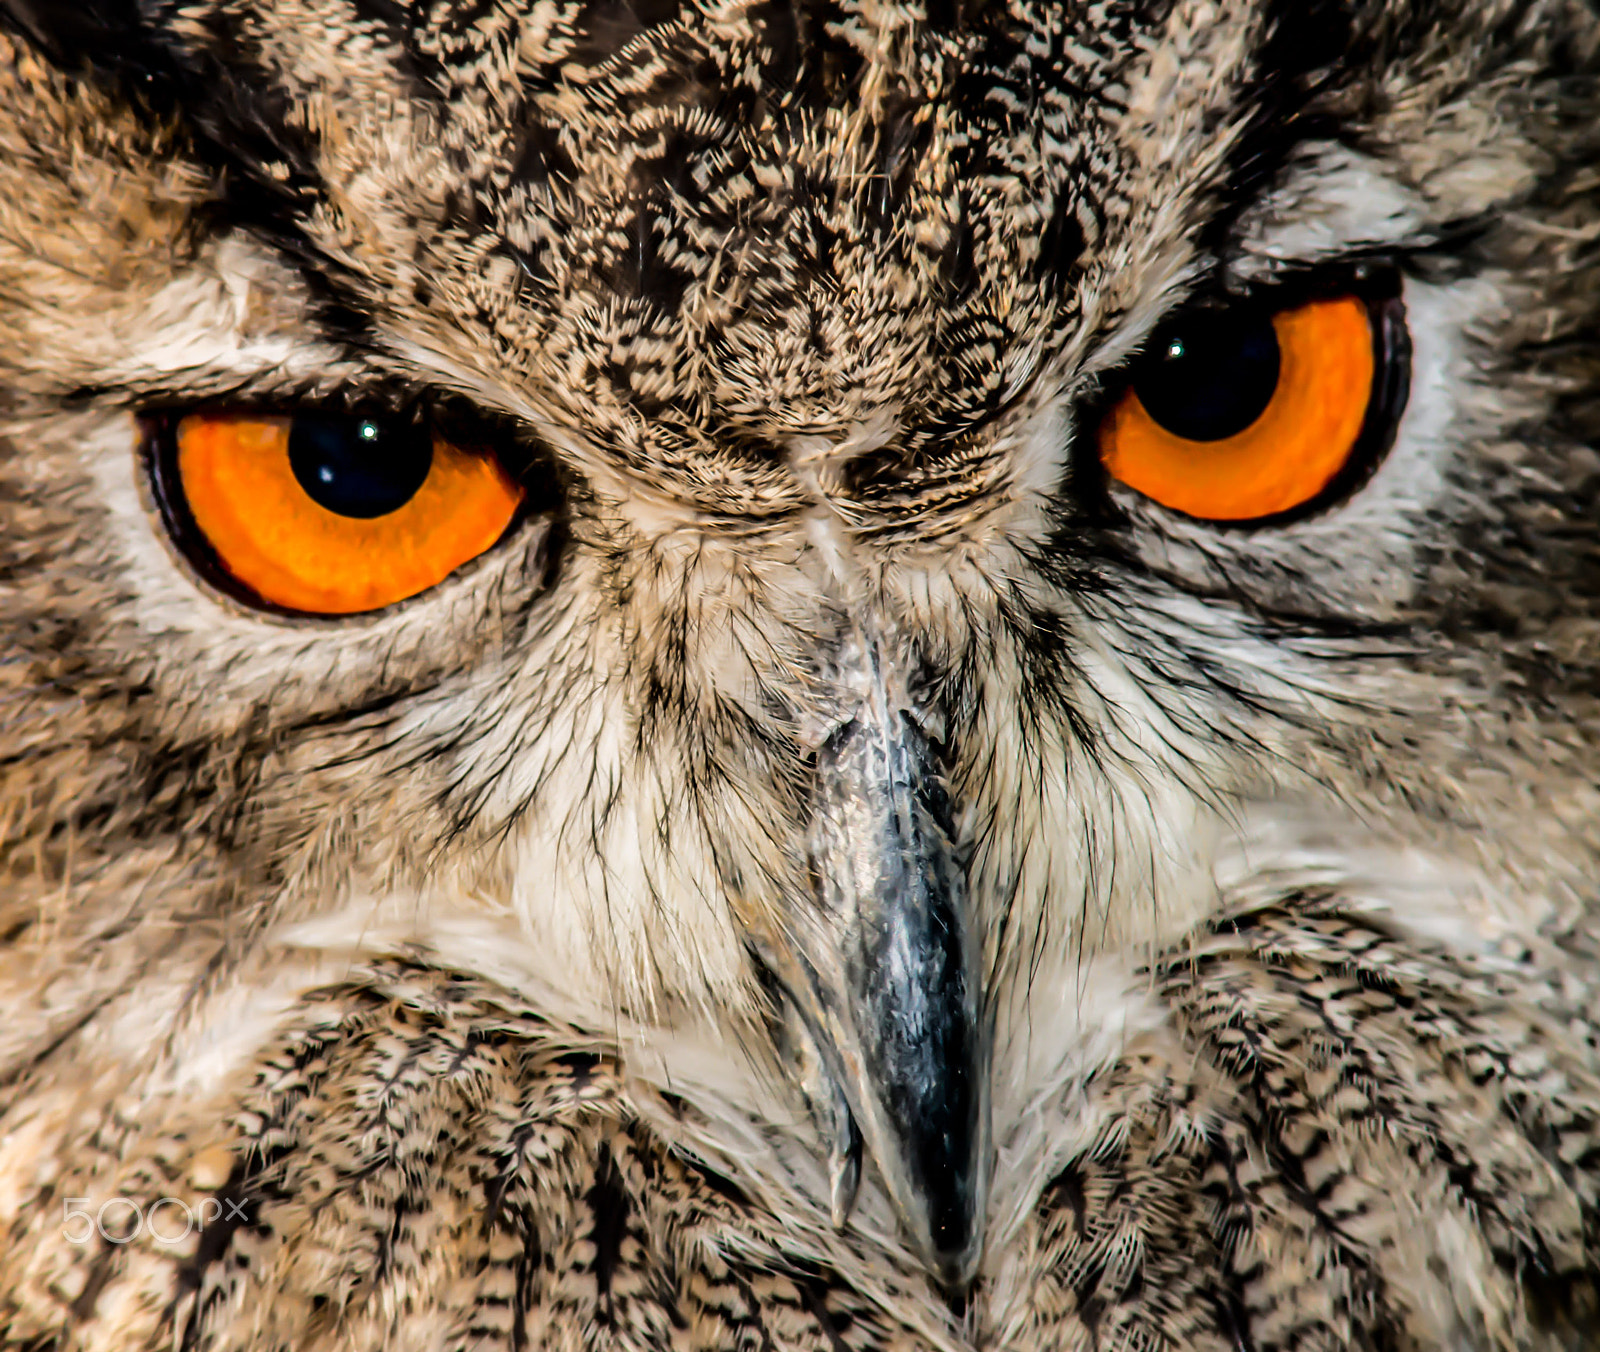 Nikon D800 + AF Zoom-Nikkor 70-210mm f/4 sample photo. Eurasian eagle owl ii photography